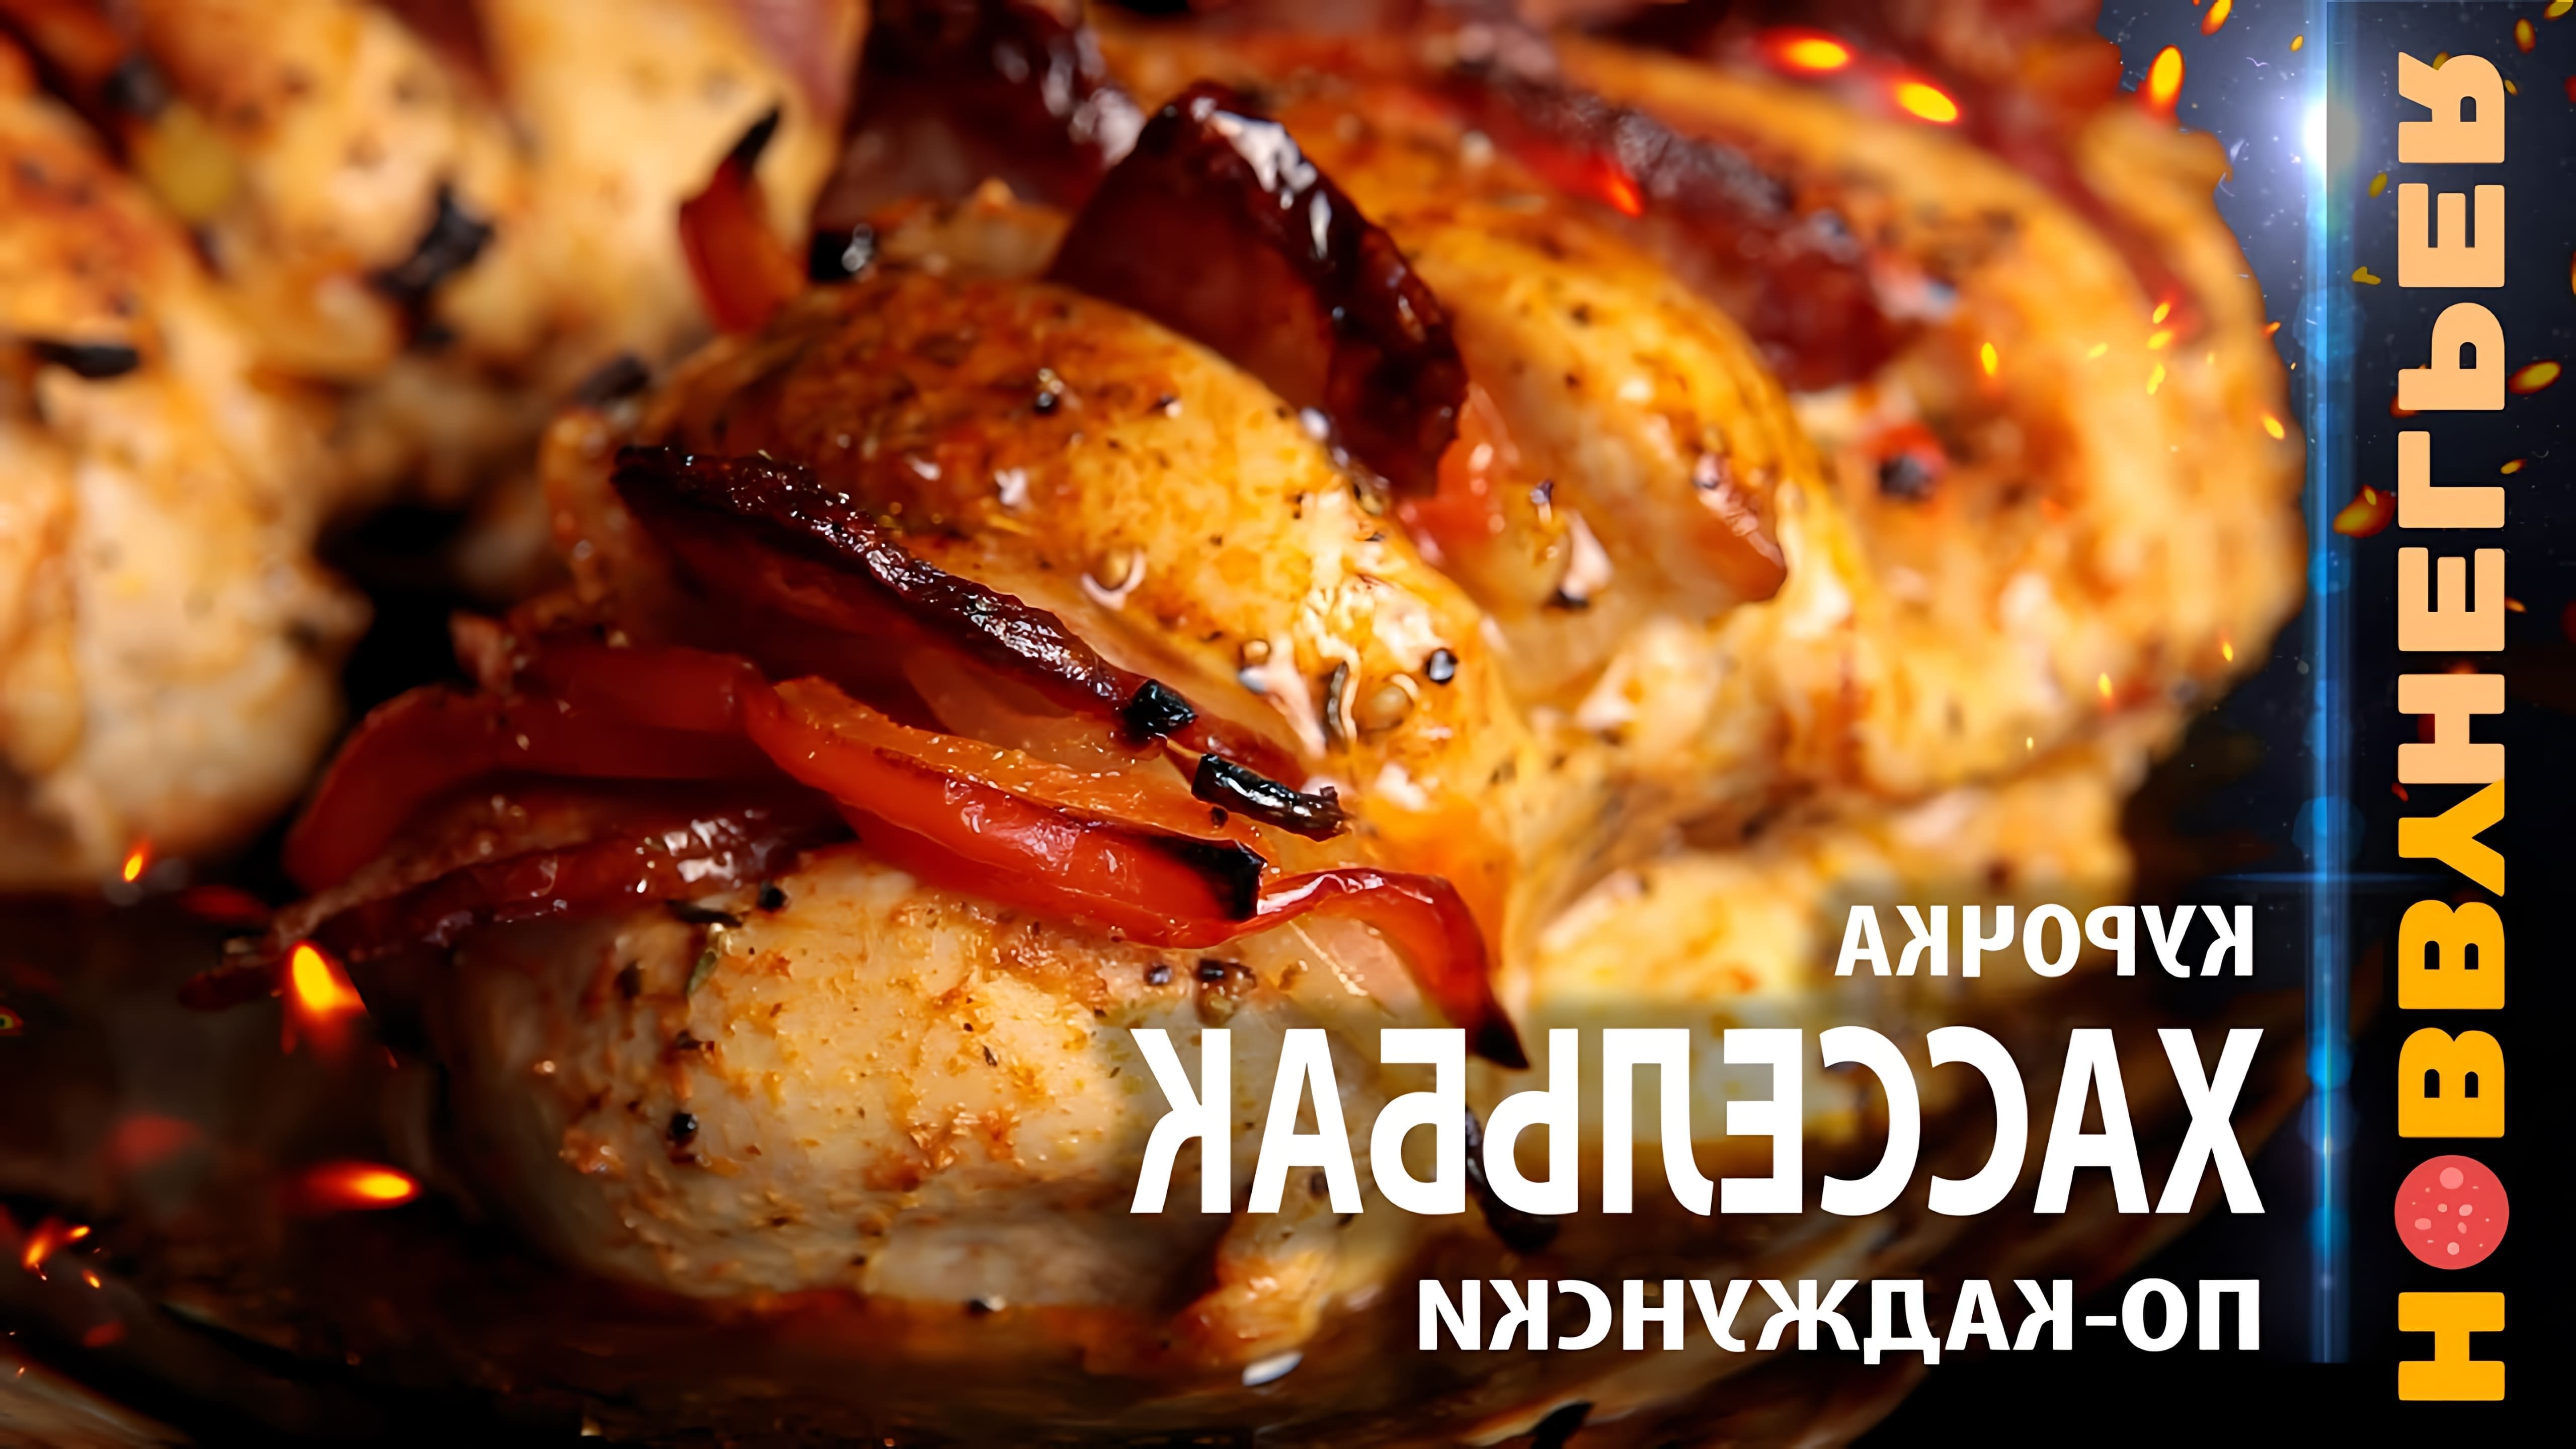 В этом видео демонстрируется рецепт приготовления курицы Хассельбак по-каджунски